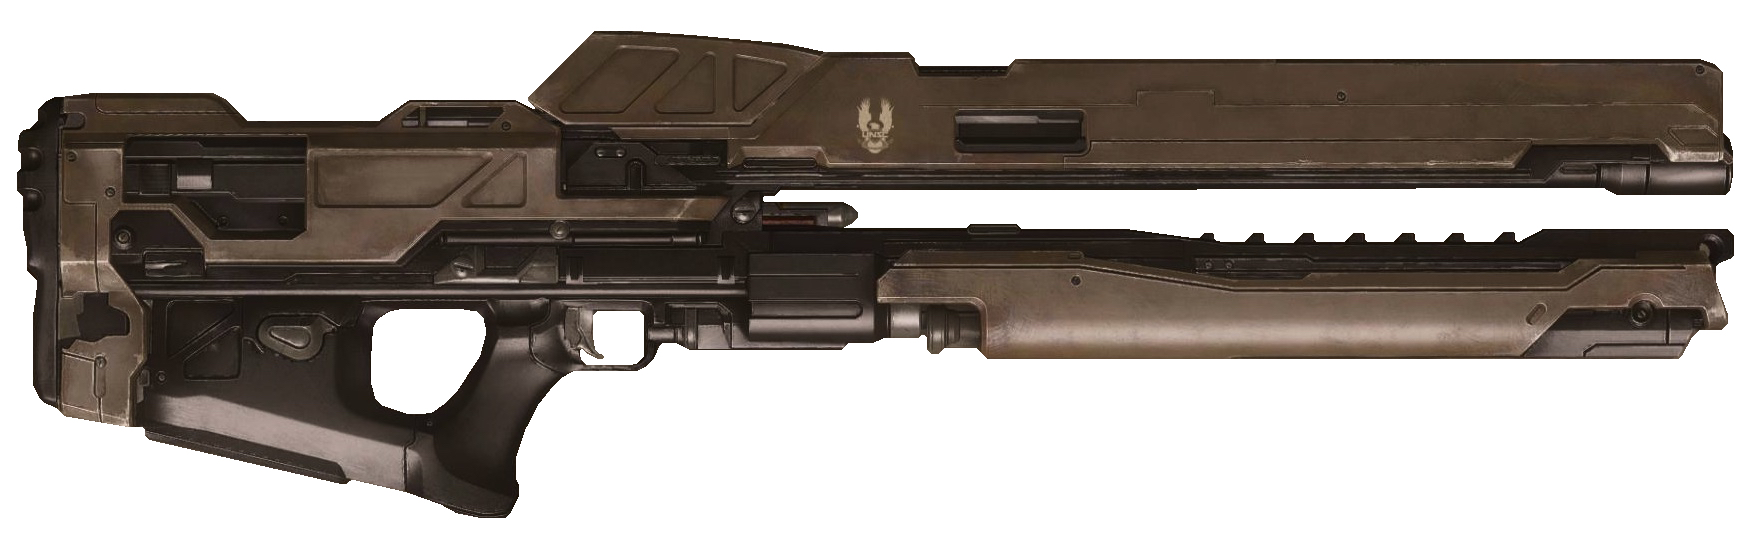 【HALO军械频道】ARC-920磁轨枪 —— 最好的单兵电磁武器-第19张